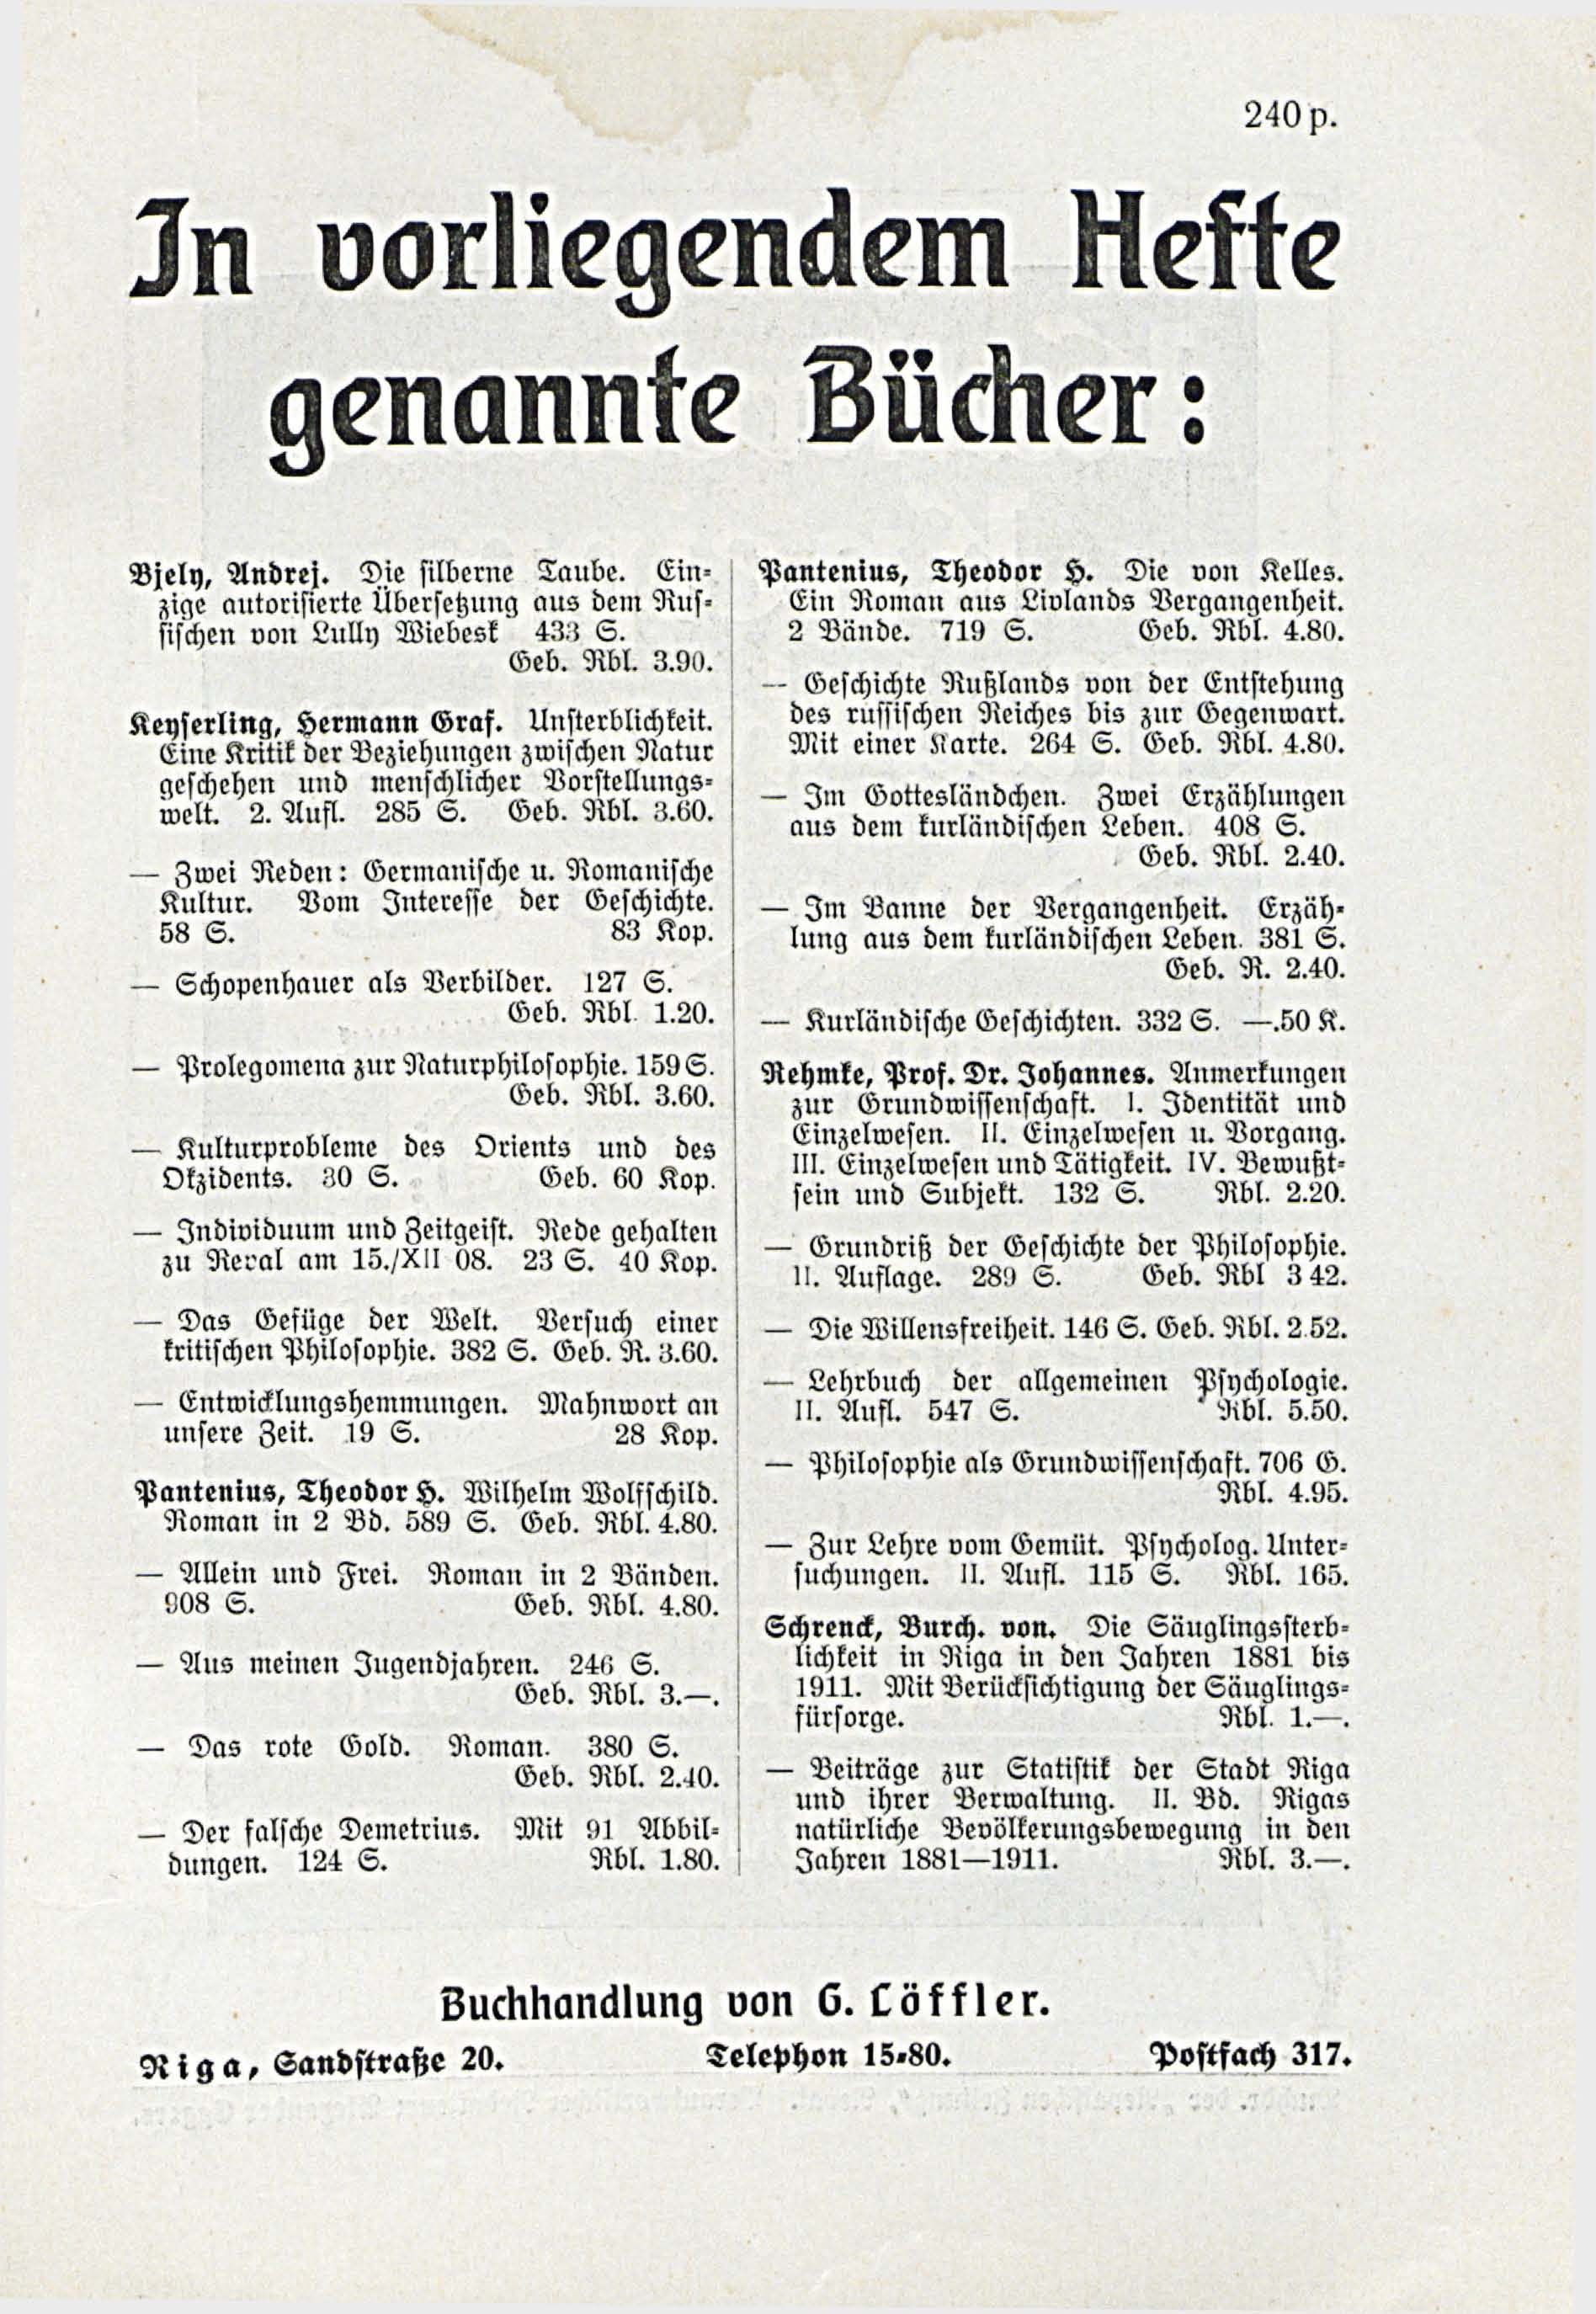 Deutsche Monatsschrift für Russland [3/03] (1914) | 97. (251) Haupttext